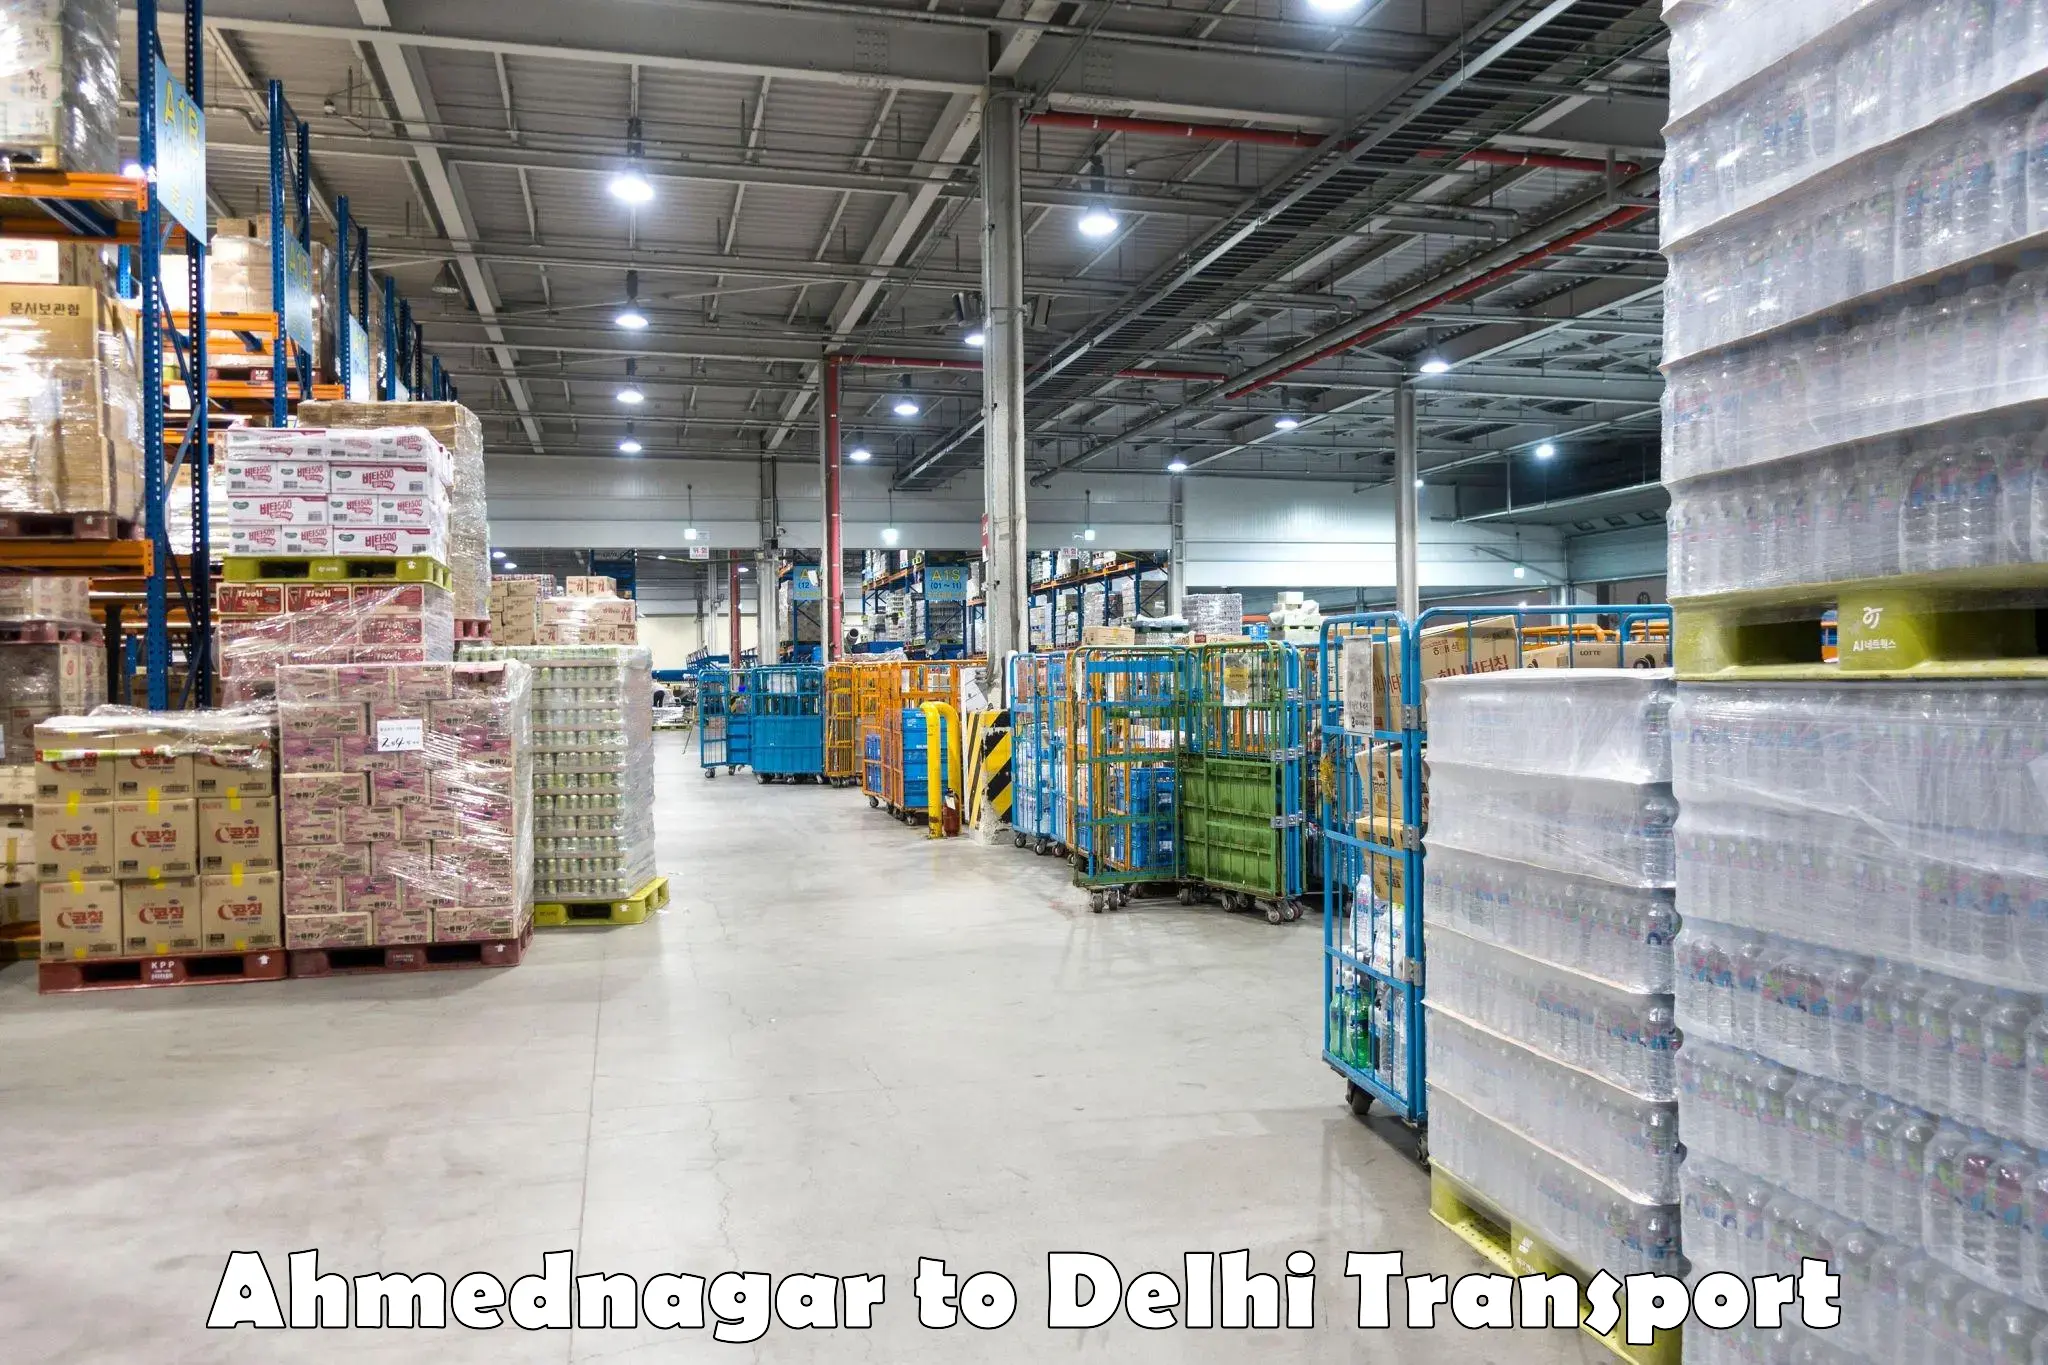 India truck logistics services Ahmednagar to IIT Delhi